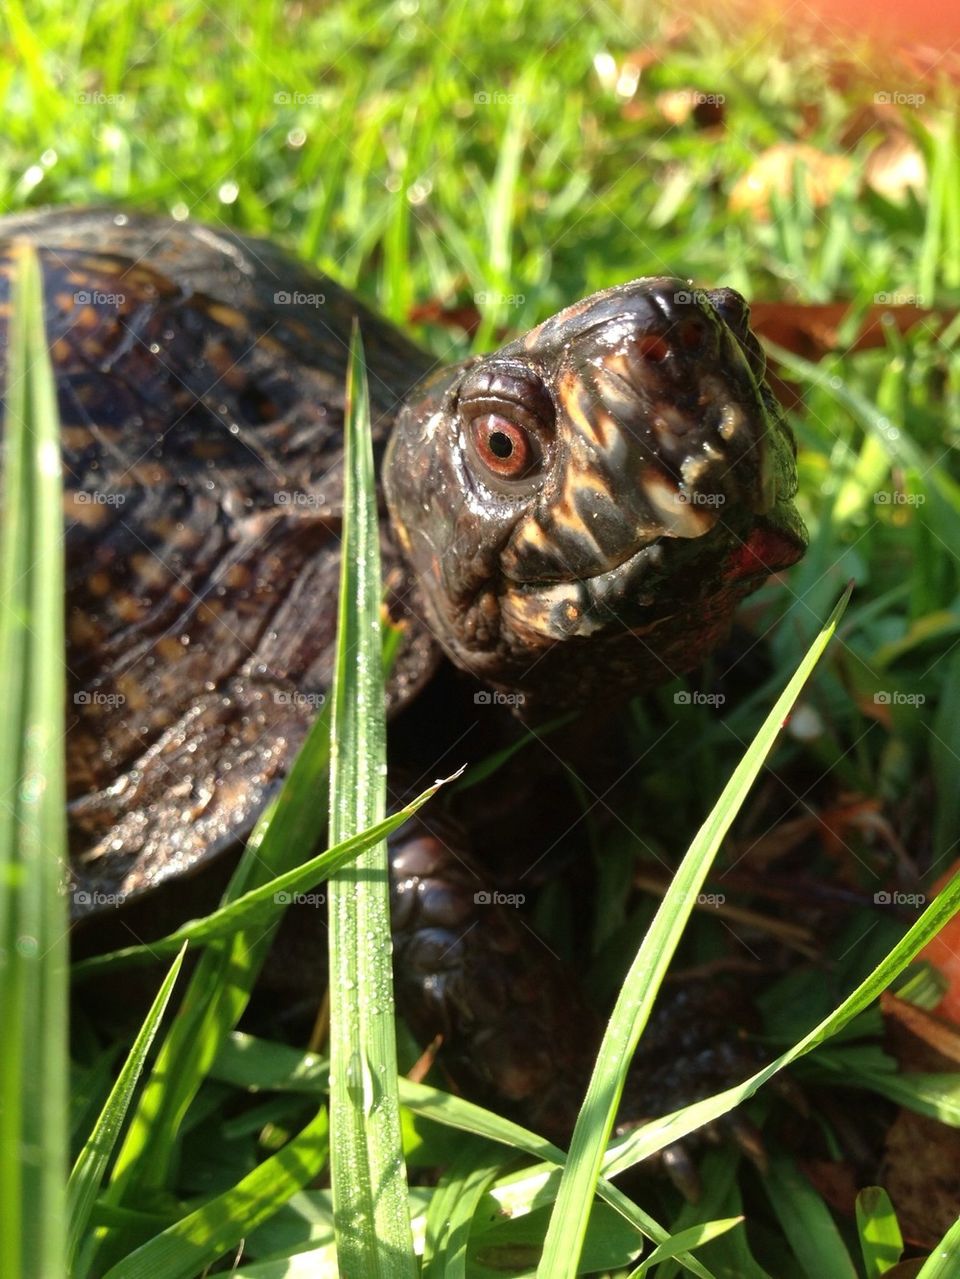 Turtle in yard